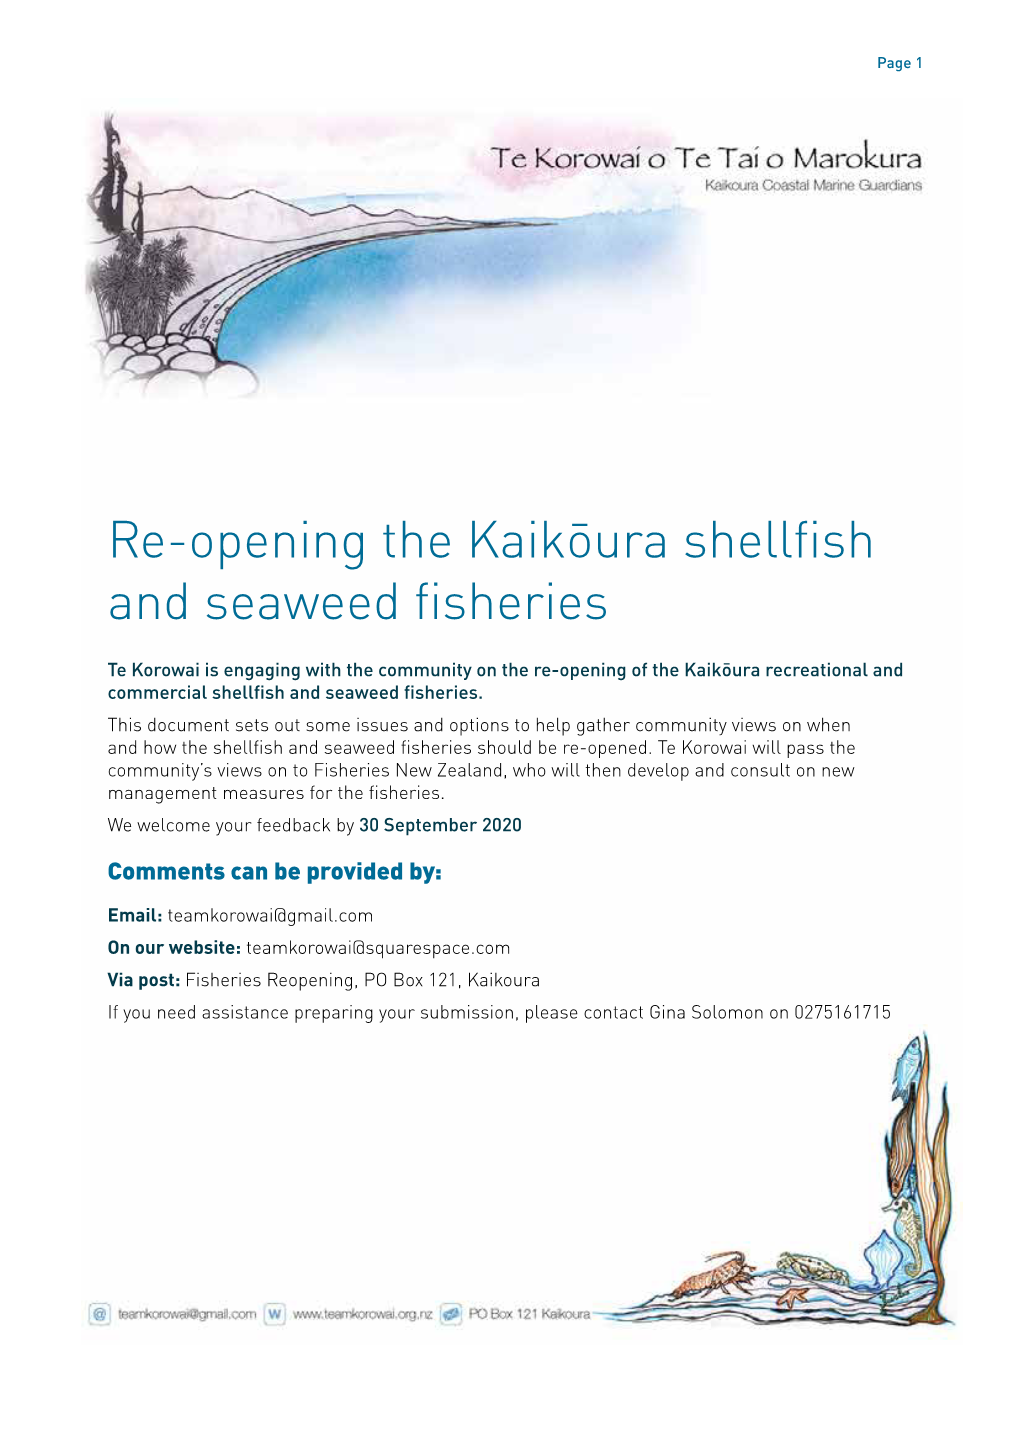 Re-Opening the Kaikōura Shellfish and Seaweed Fisheries